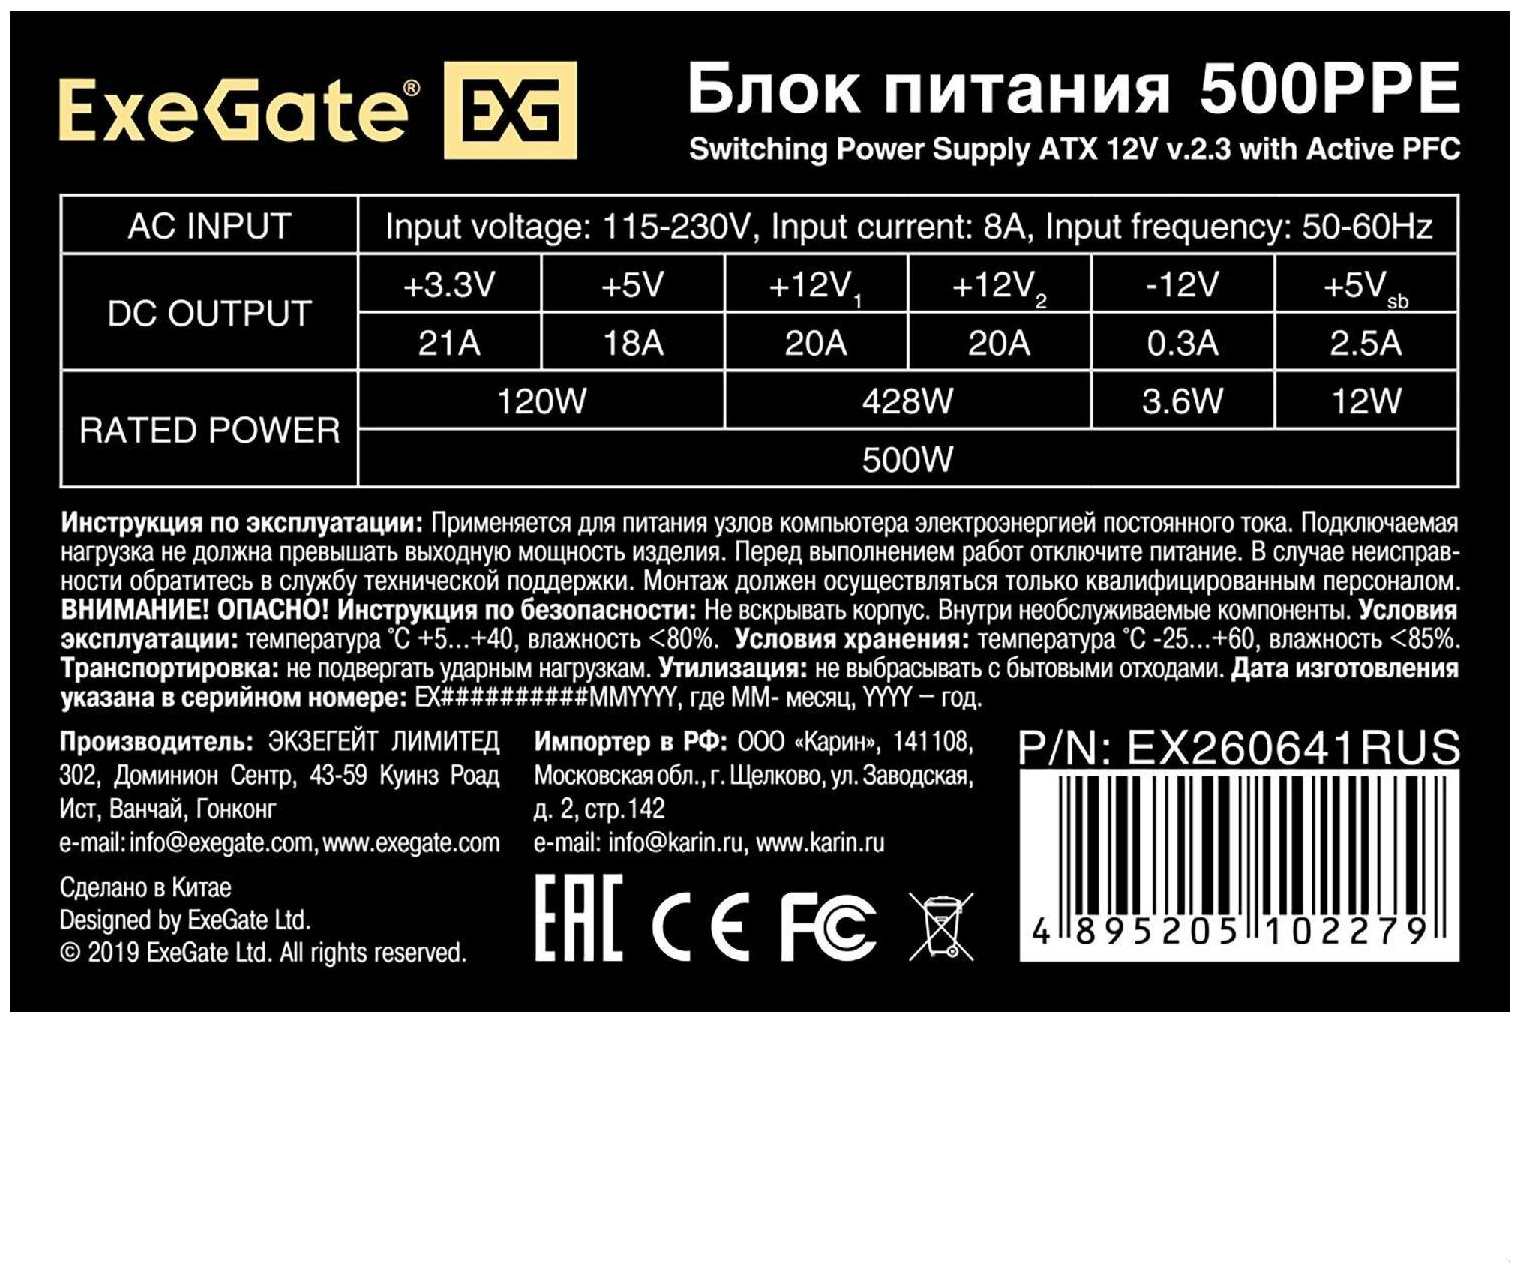 Блок питания ExeGate 500PPE 500W с защитой от выдергивания черный - фото №4